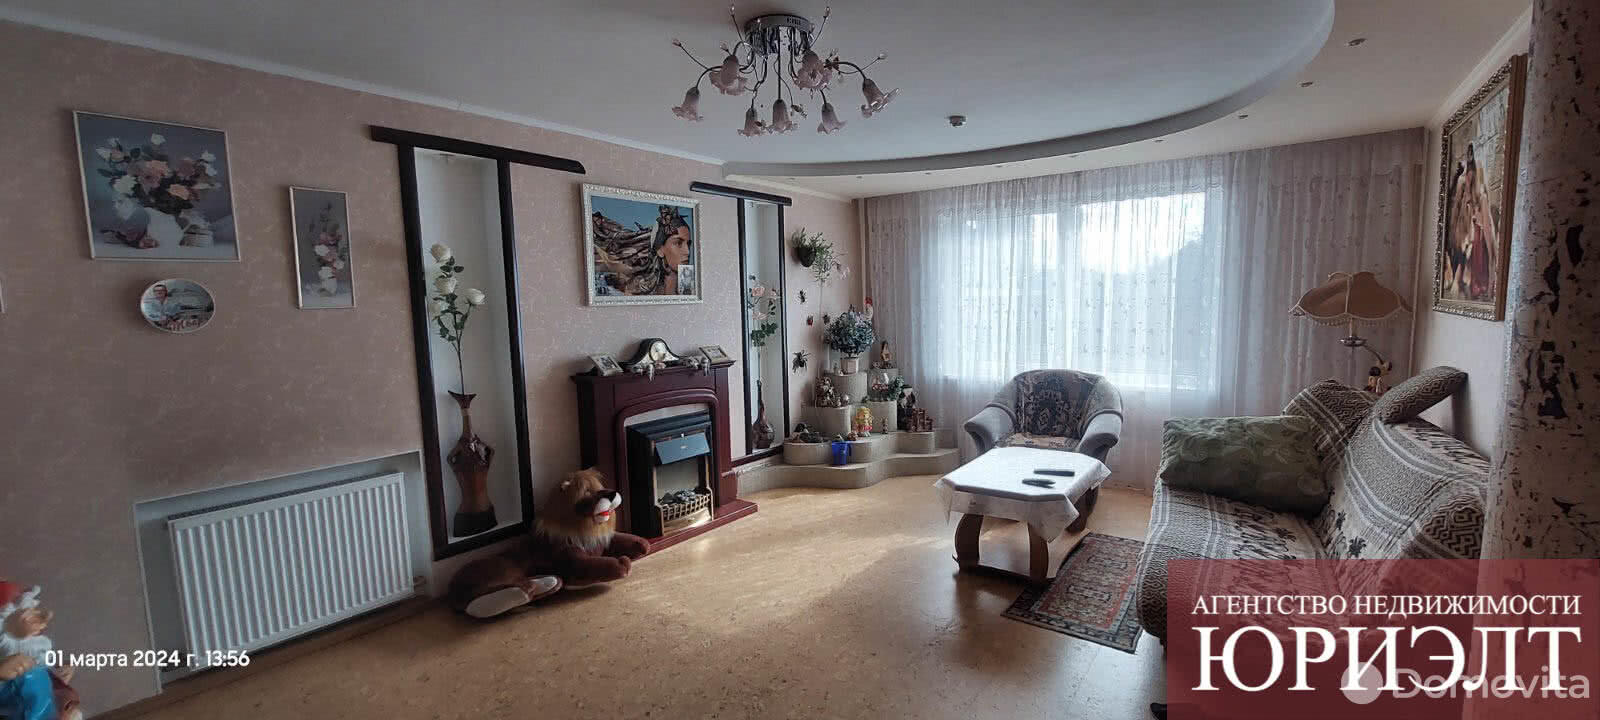 Продажа 1-этажного дома в Бобруйске, Могилевская область пер. Бахарова, 56000USD, код 632865 - фото 1